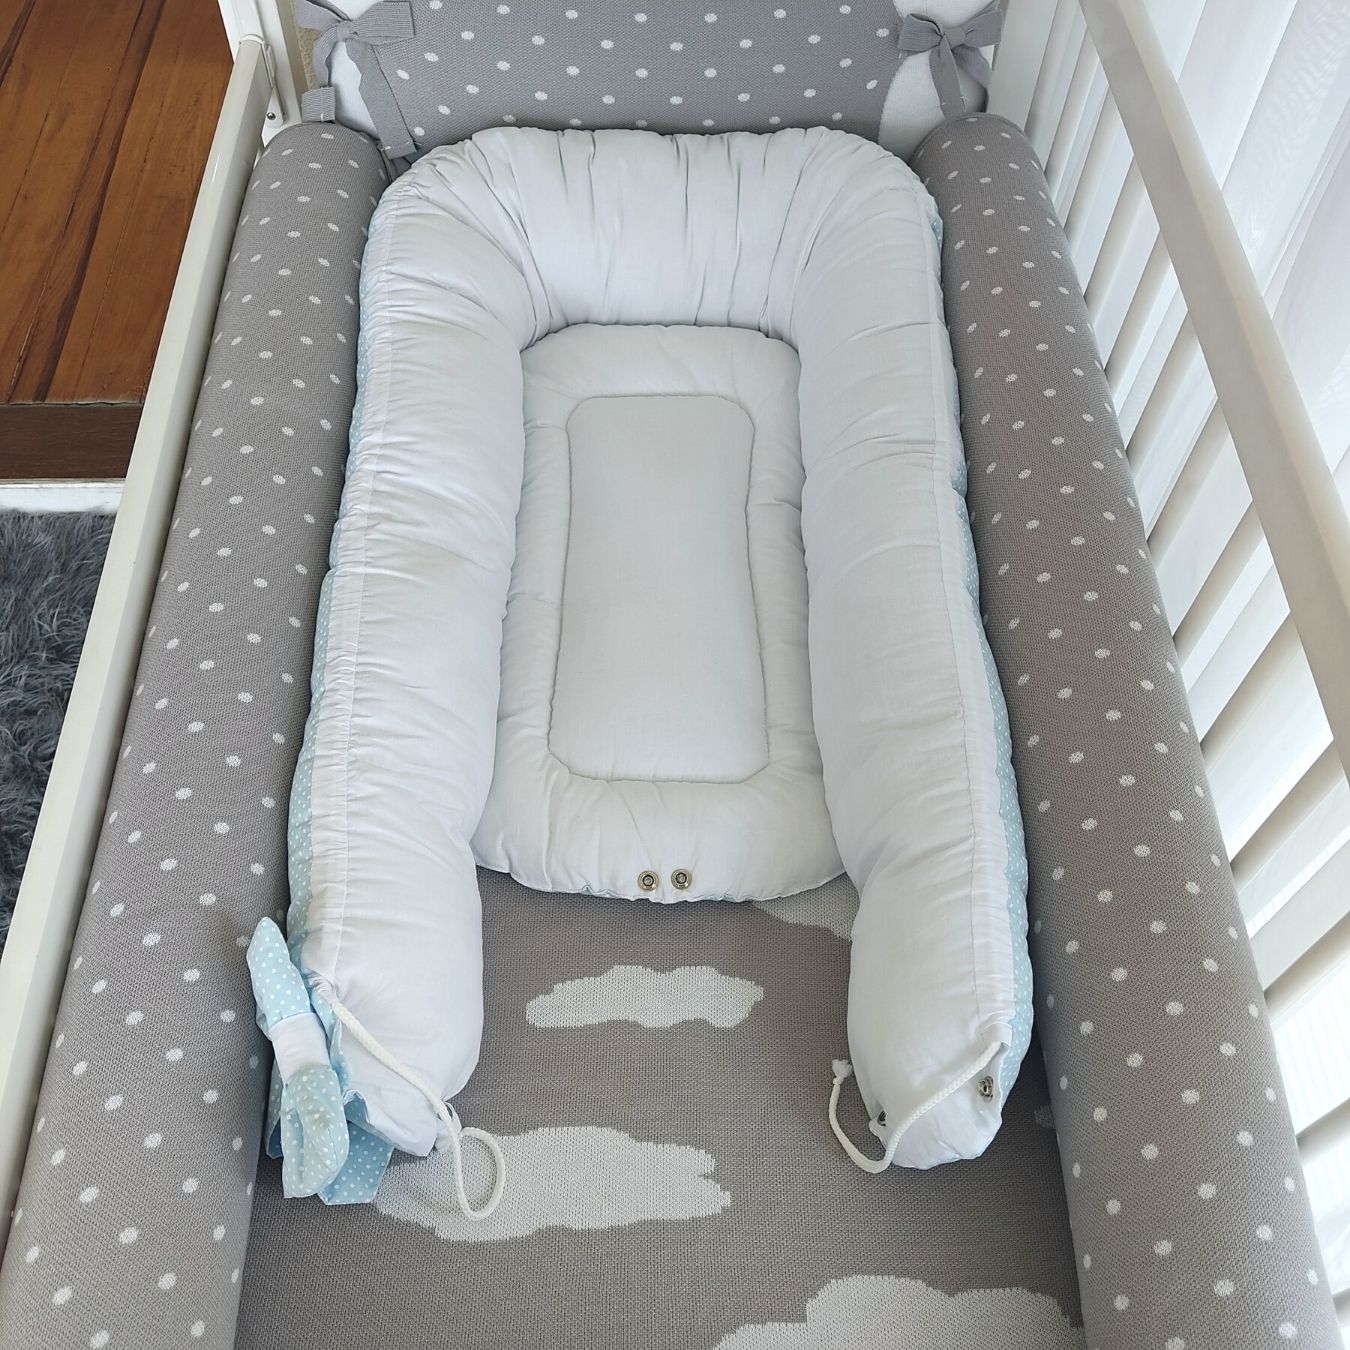 Ninho de bebê redutor de berço com almofada personalizado azul poá e branco